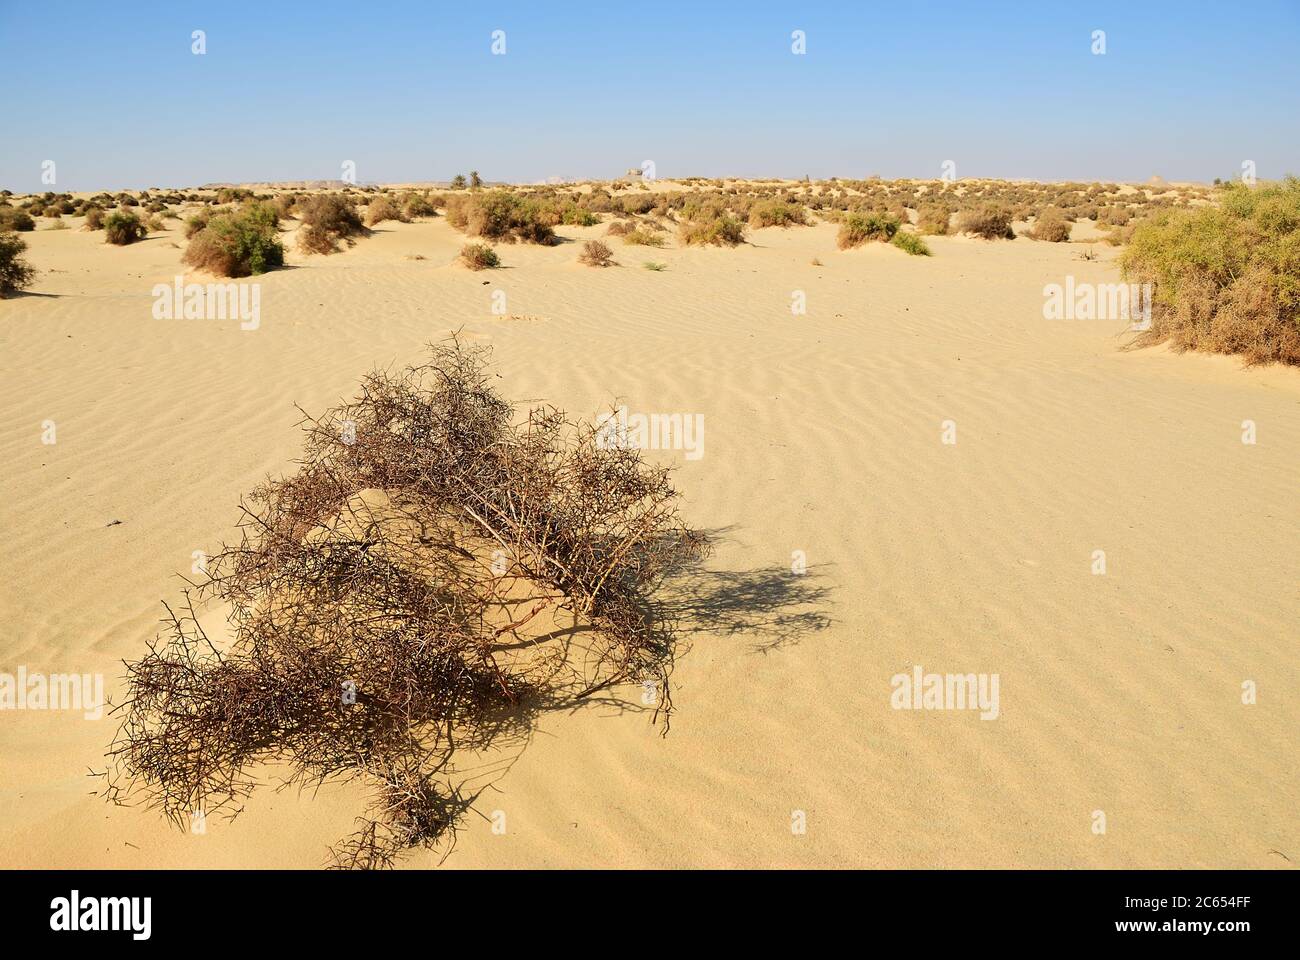 Sahara Wüste und Kameldorn Pflanzen wachsen im Sand. Westliche Wüste, Ain  el-Maqfi, Ain Abu Hawas. Ägypten. Afrika Stockfotografie - Alamy